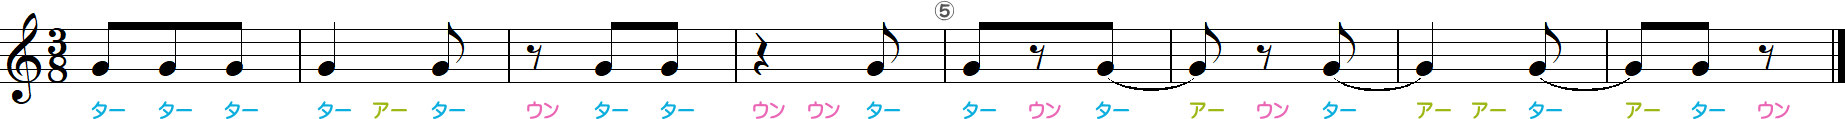 8分の3拍子のリズム練習8小節